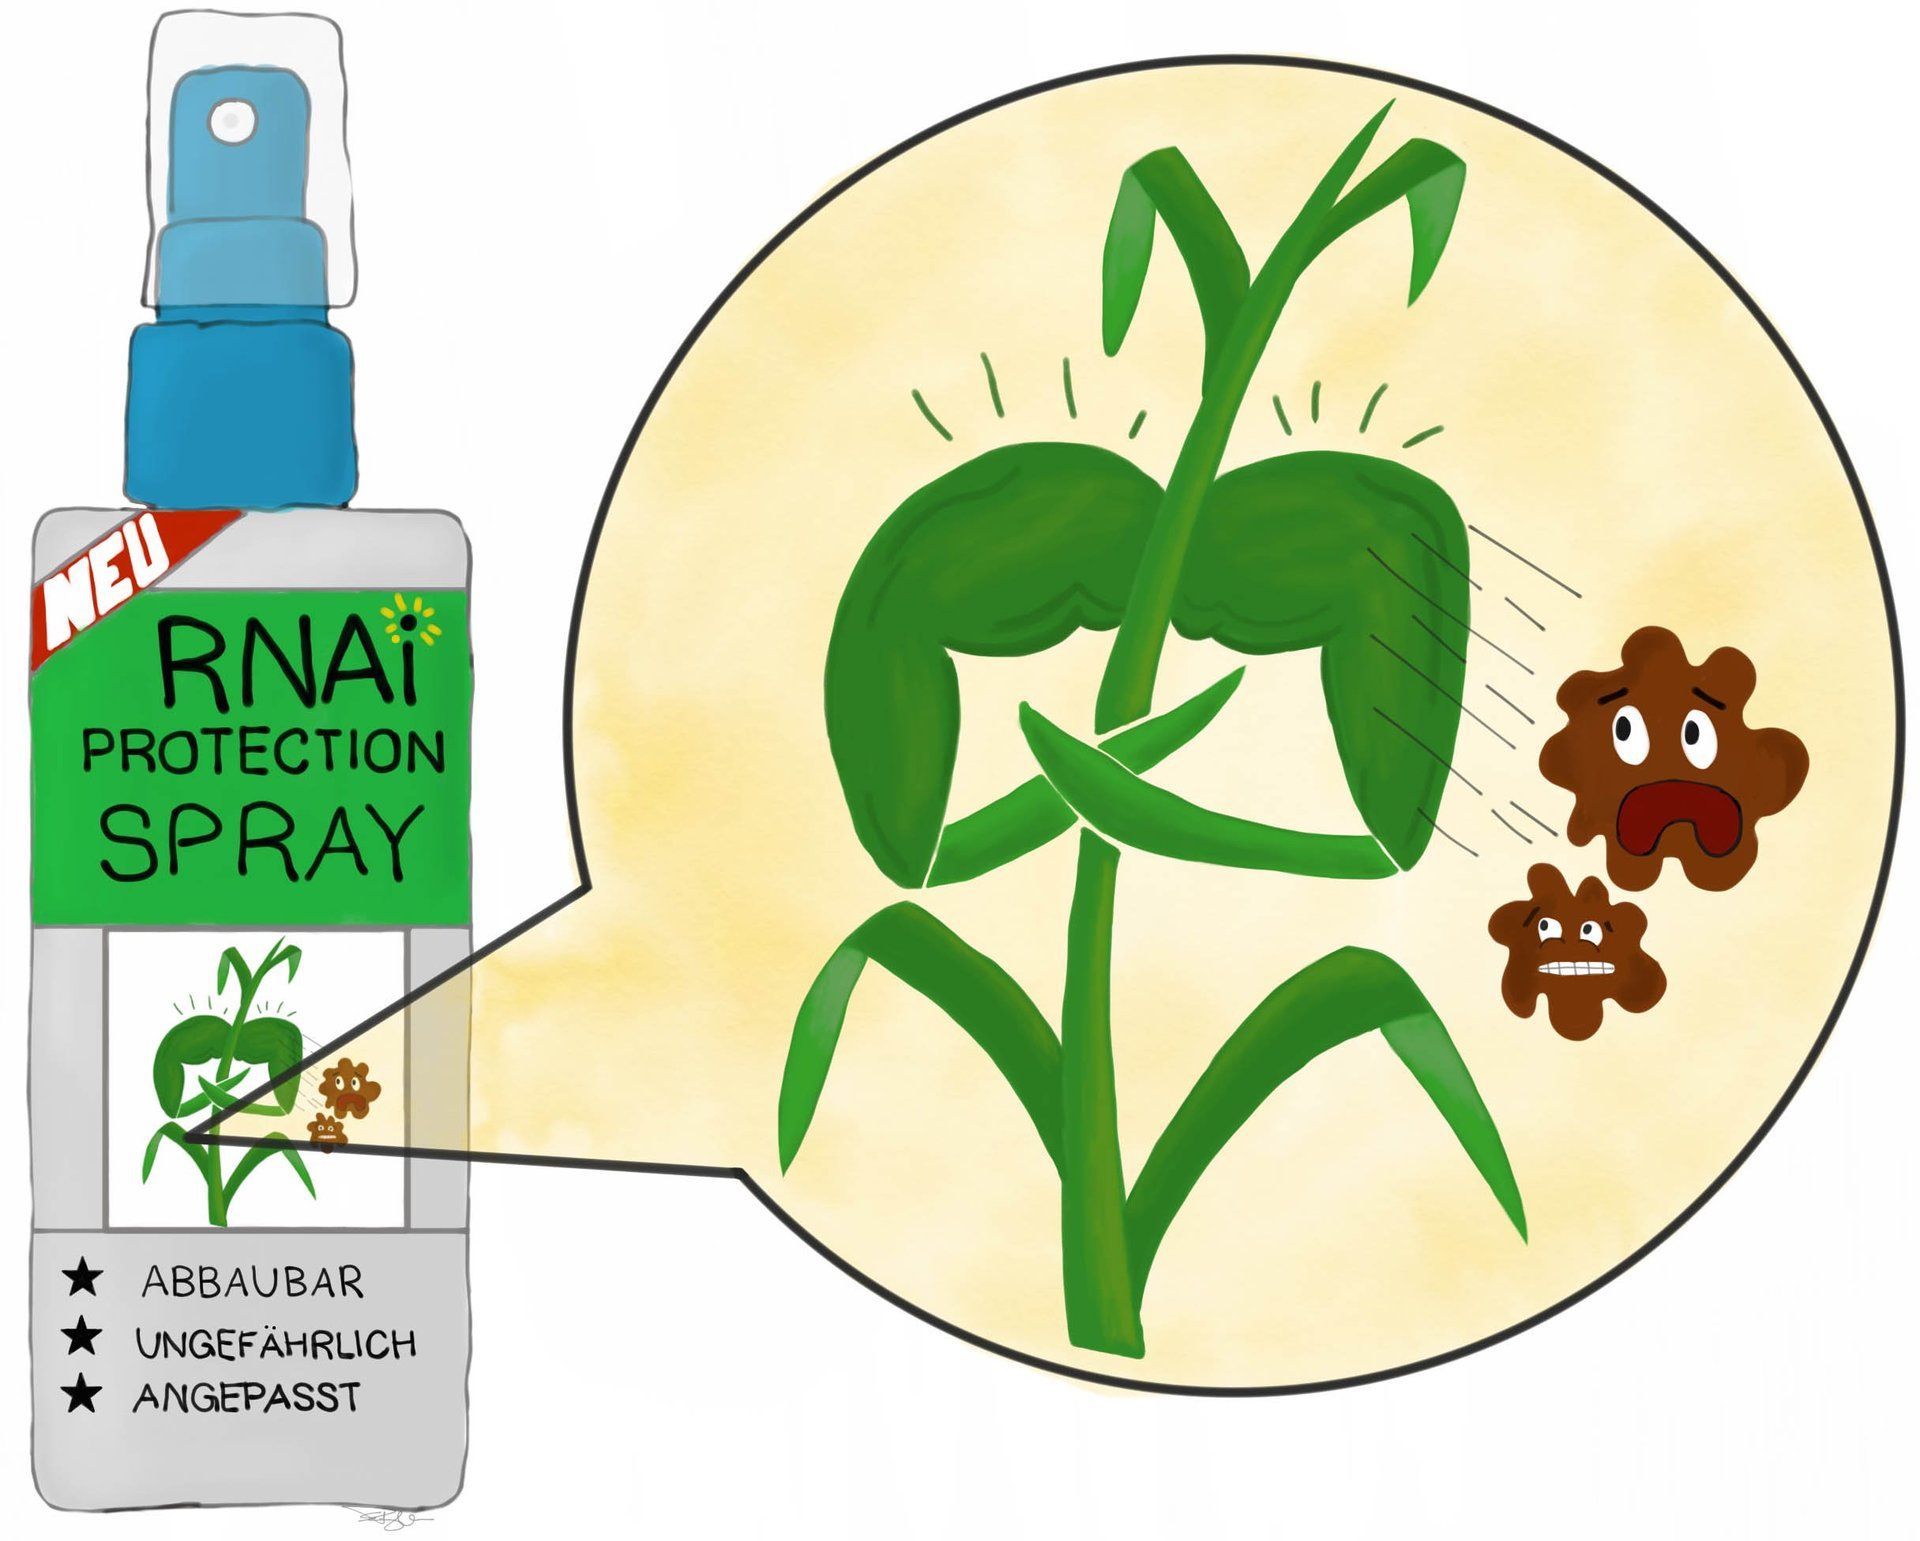 RNA-Spray als Alternative zu Pestiziden und gentechnisch veränderten Pflanzen